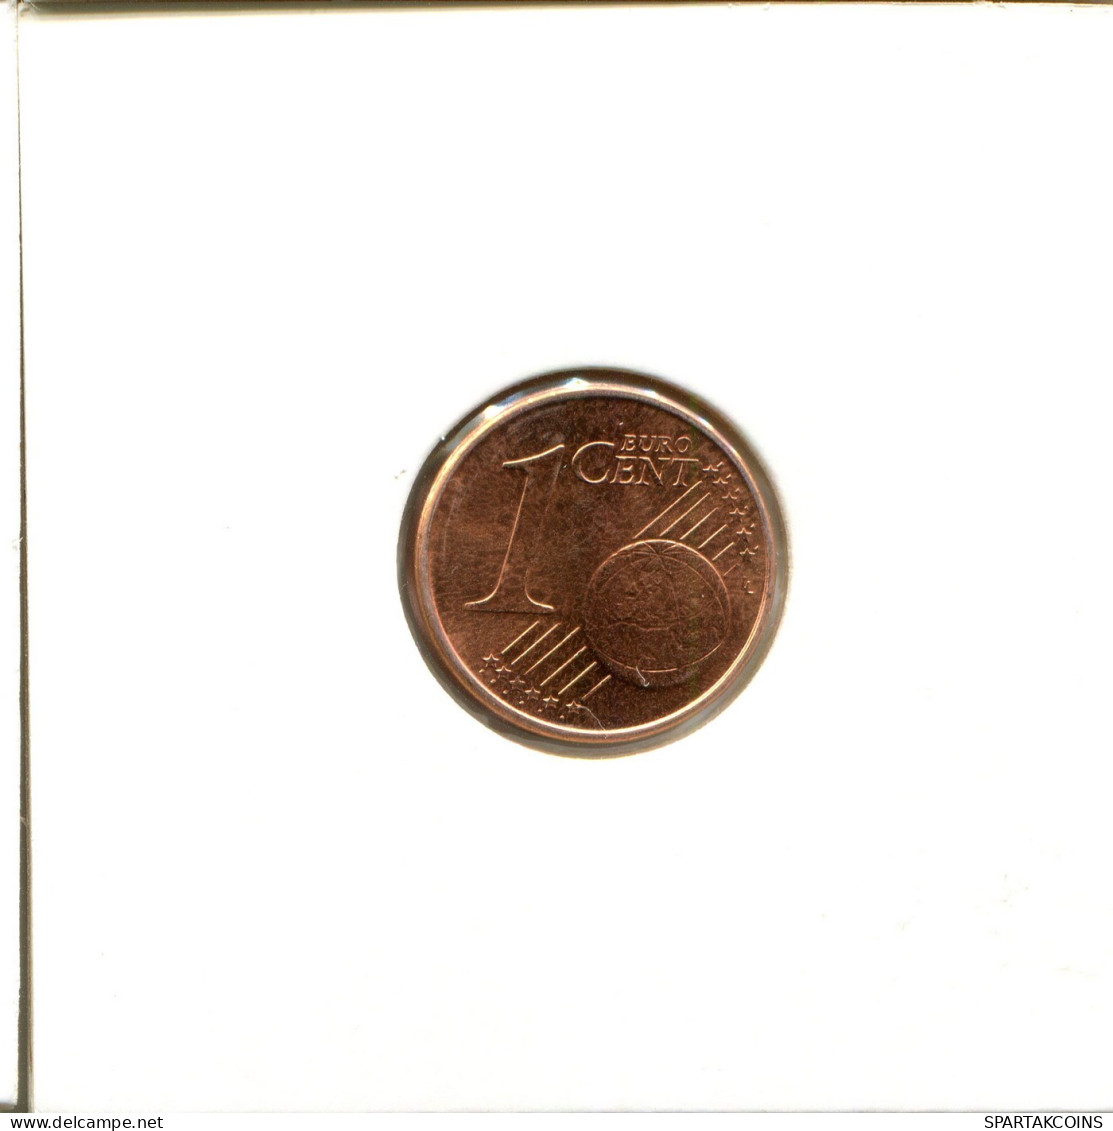 1 EURO CENT 2005 GRECIA GREECE Moneda #EU164.E.A - Greece